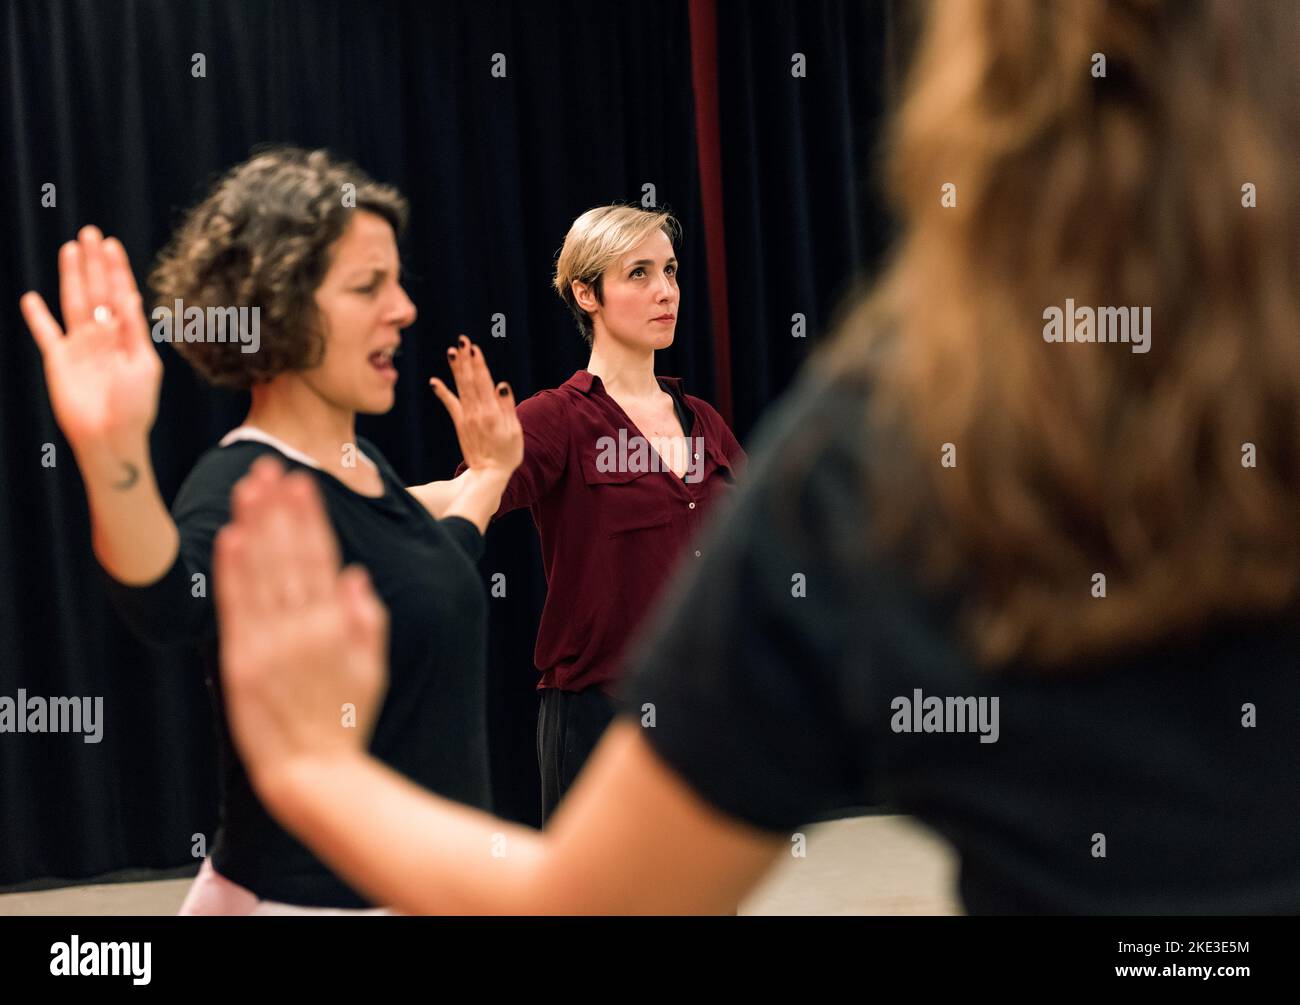 Theaterschüler während der Übung mit Schwerpunkt auf Armen, die unterschiedliche Reaktionen zeigen Stockfoto